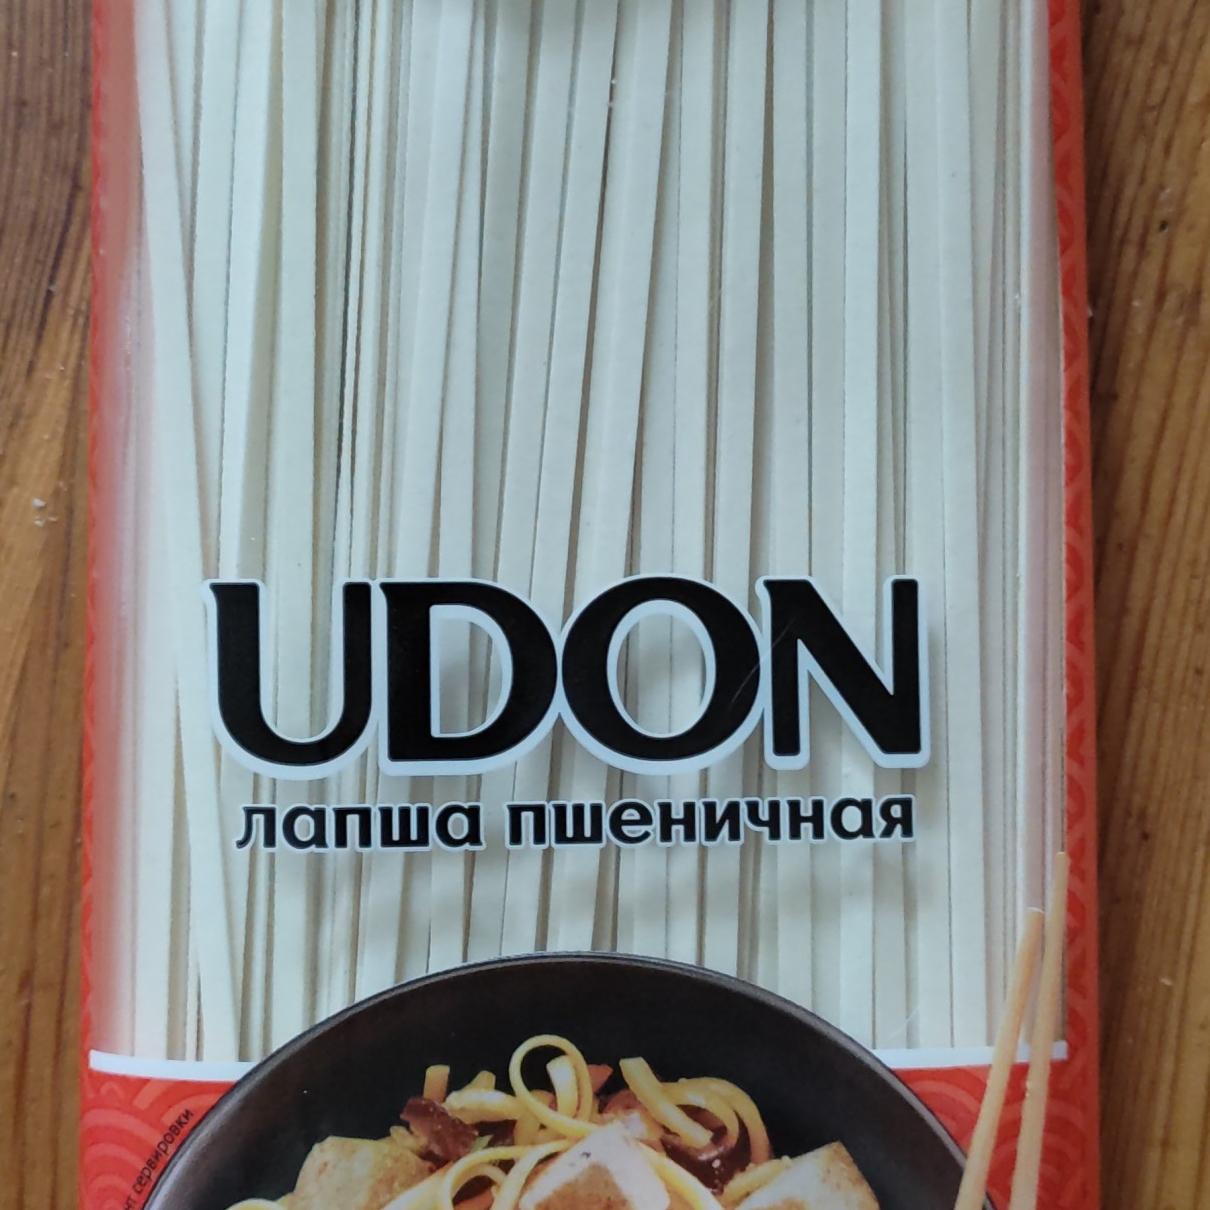 Фото - Udon лапша пшеничная Imperial cuisine